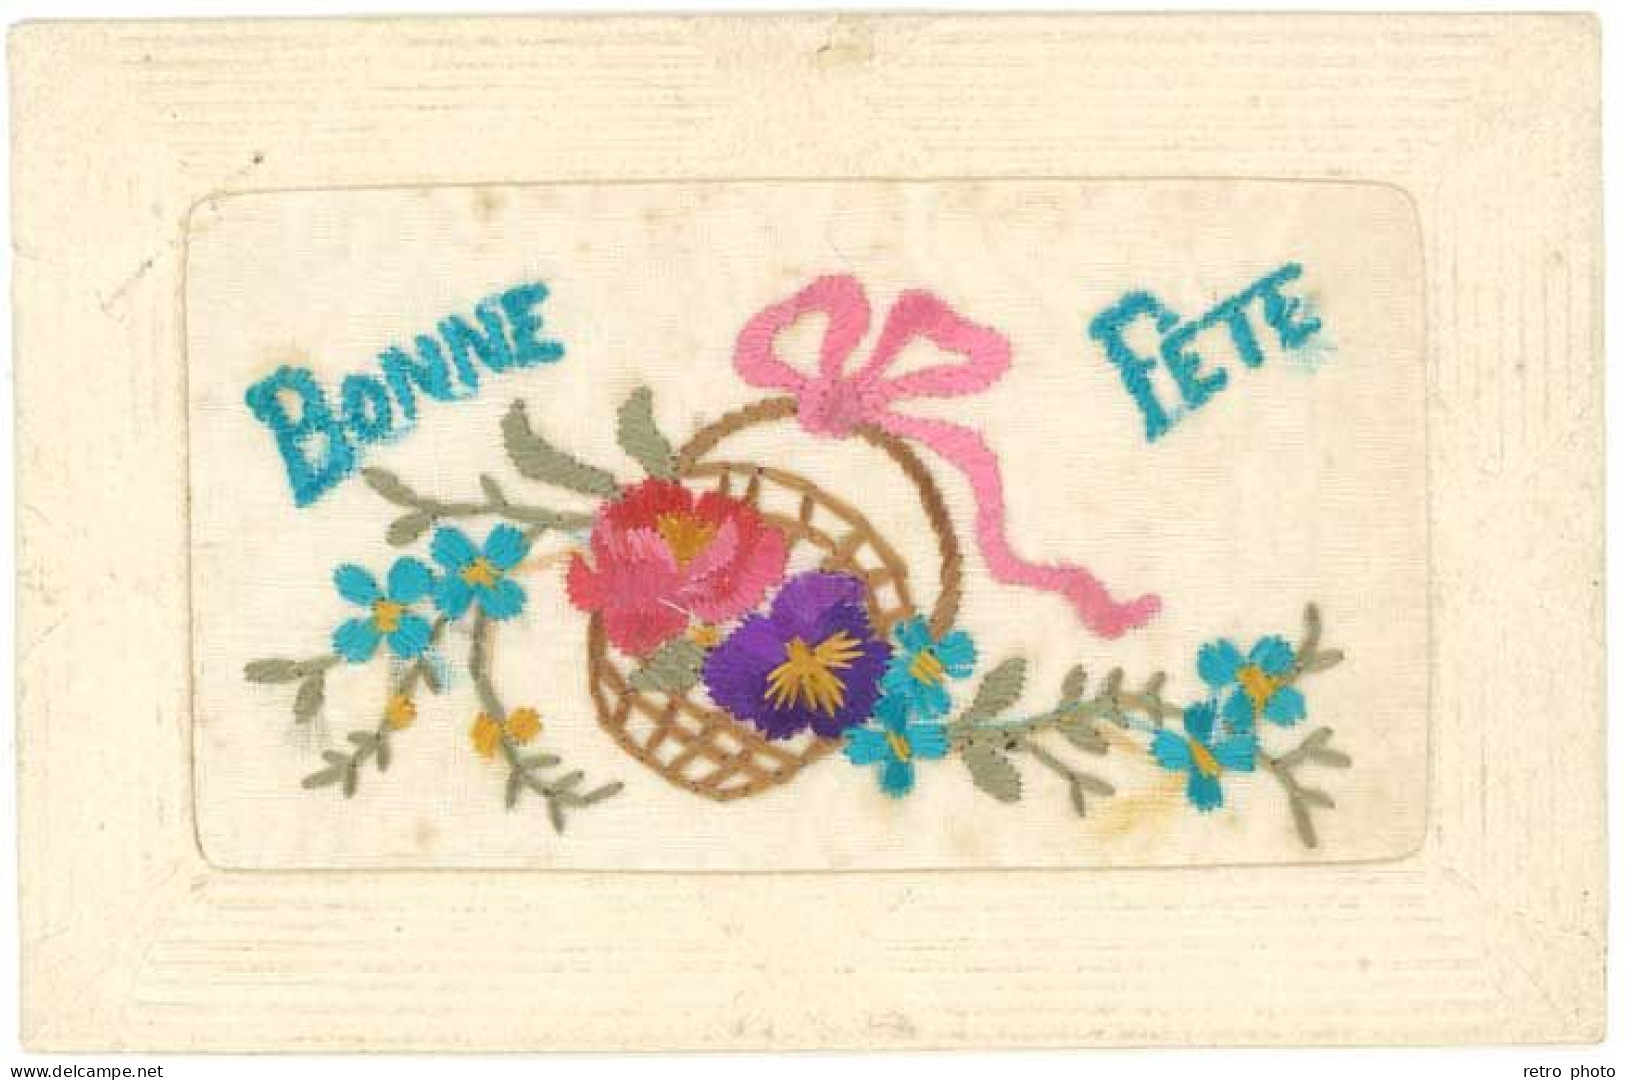 2 Cpa Fantaisies Brodées - Bonne Fête , Fleurs   (S.12574) - Ricamate